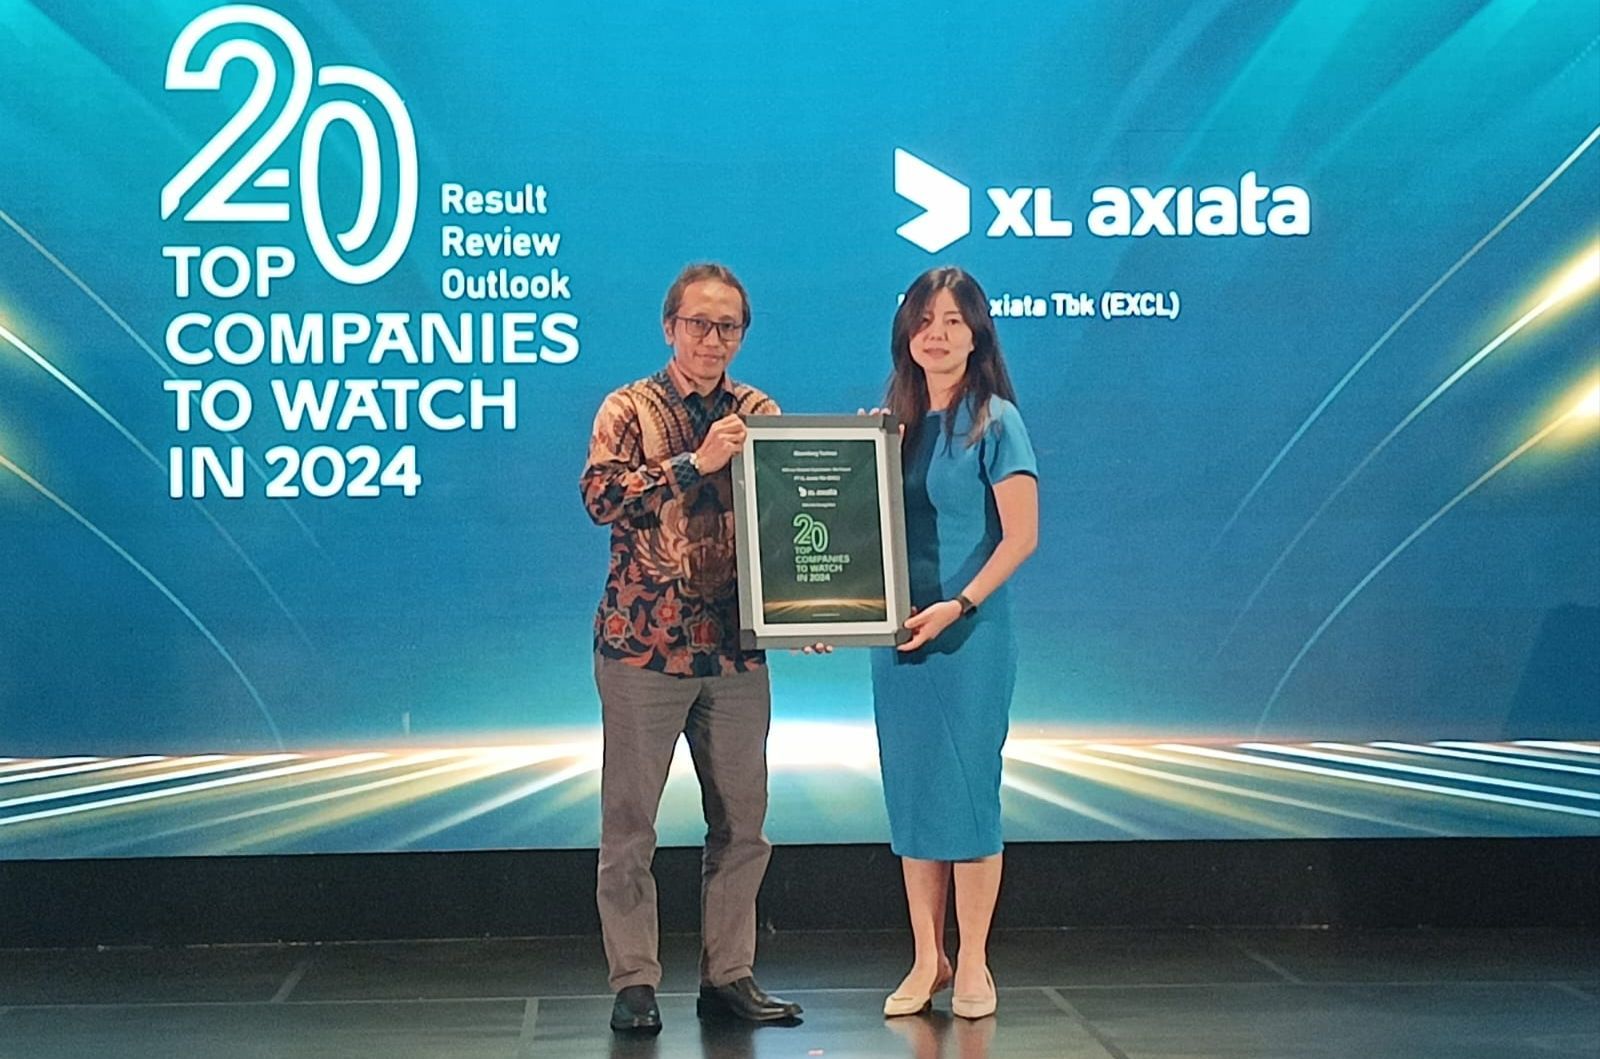 Setidaknya ada lima penghargaan dari tiga ajang dalam beragam kategori yang diterima, yaitu HR Asia Awards 2024, Transparansi Penurunan dan Perhitungan Emisi Korporasi Terbaik 2024, dan 20 Top Companies to Watch In 2024